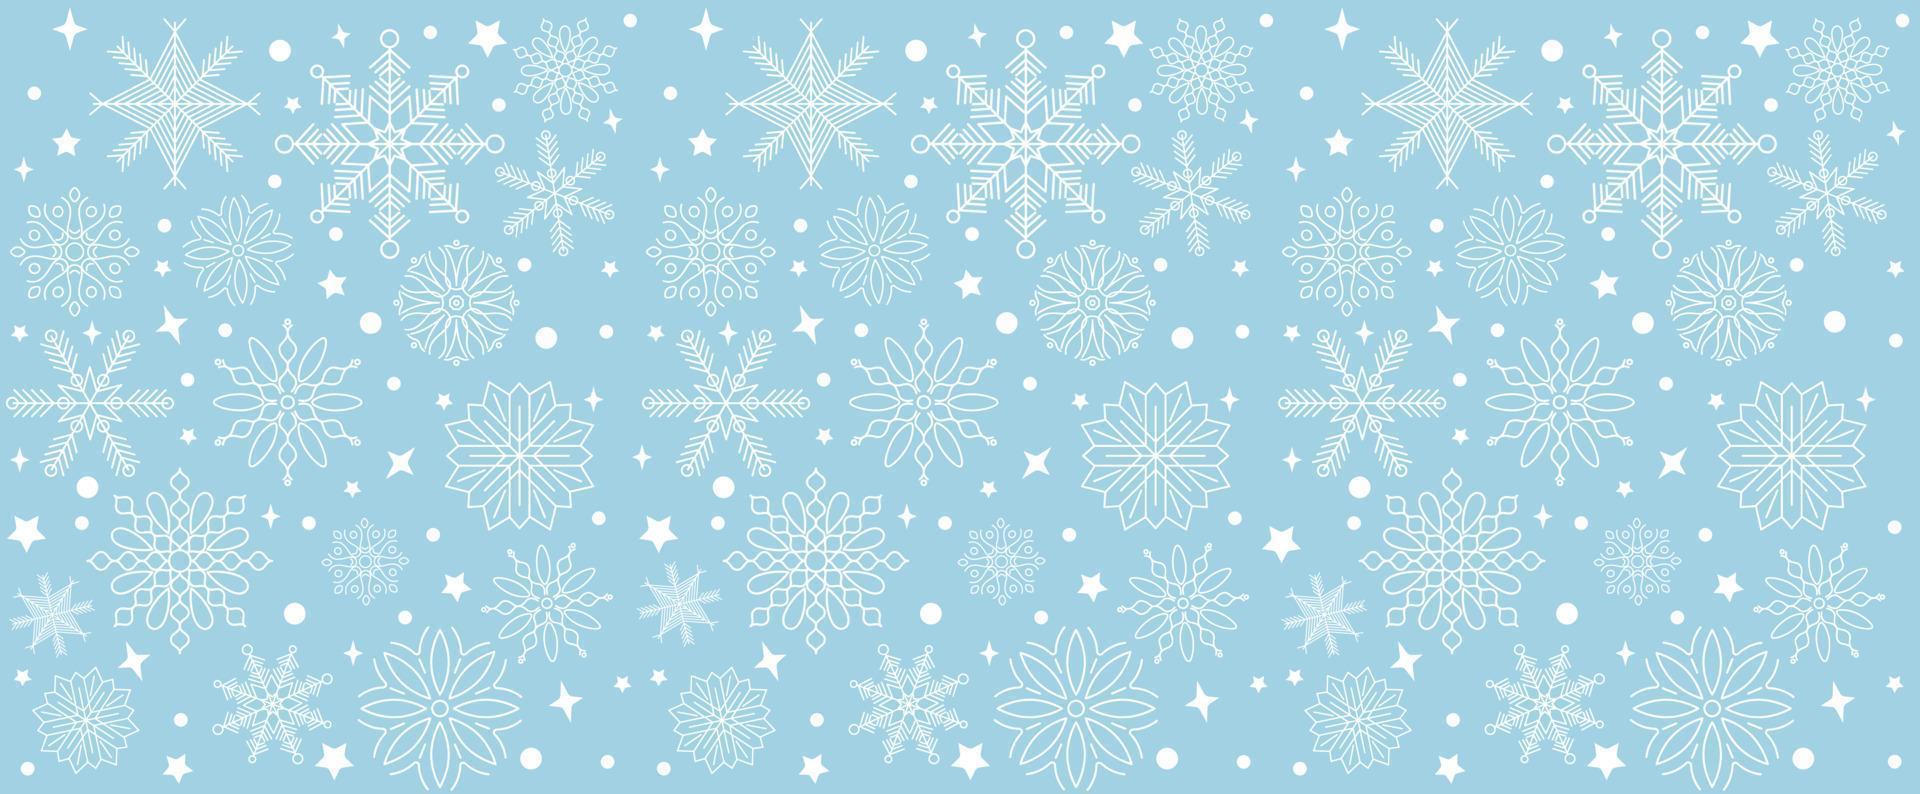 padrão de floco de neve sem costura. neve branca sobre fundo azul. ilustração vetorial vetor